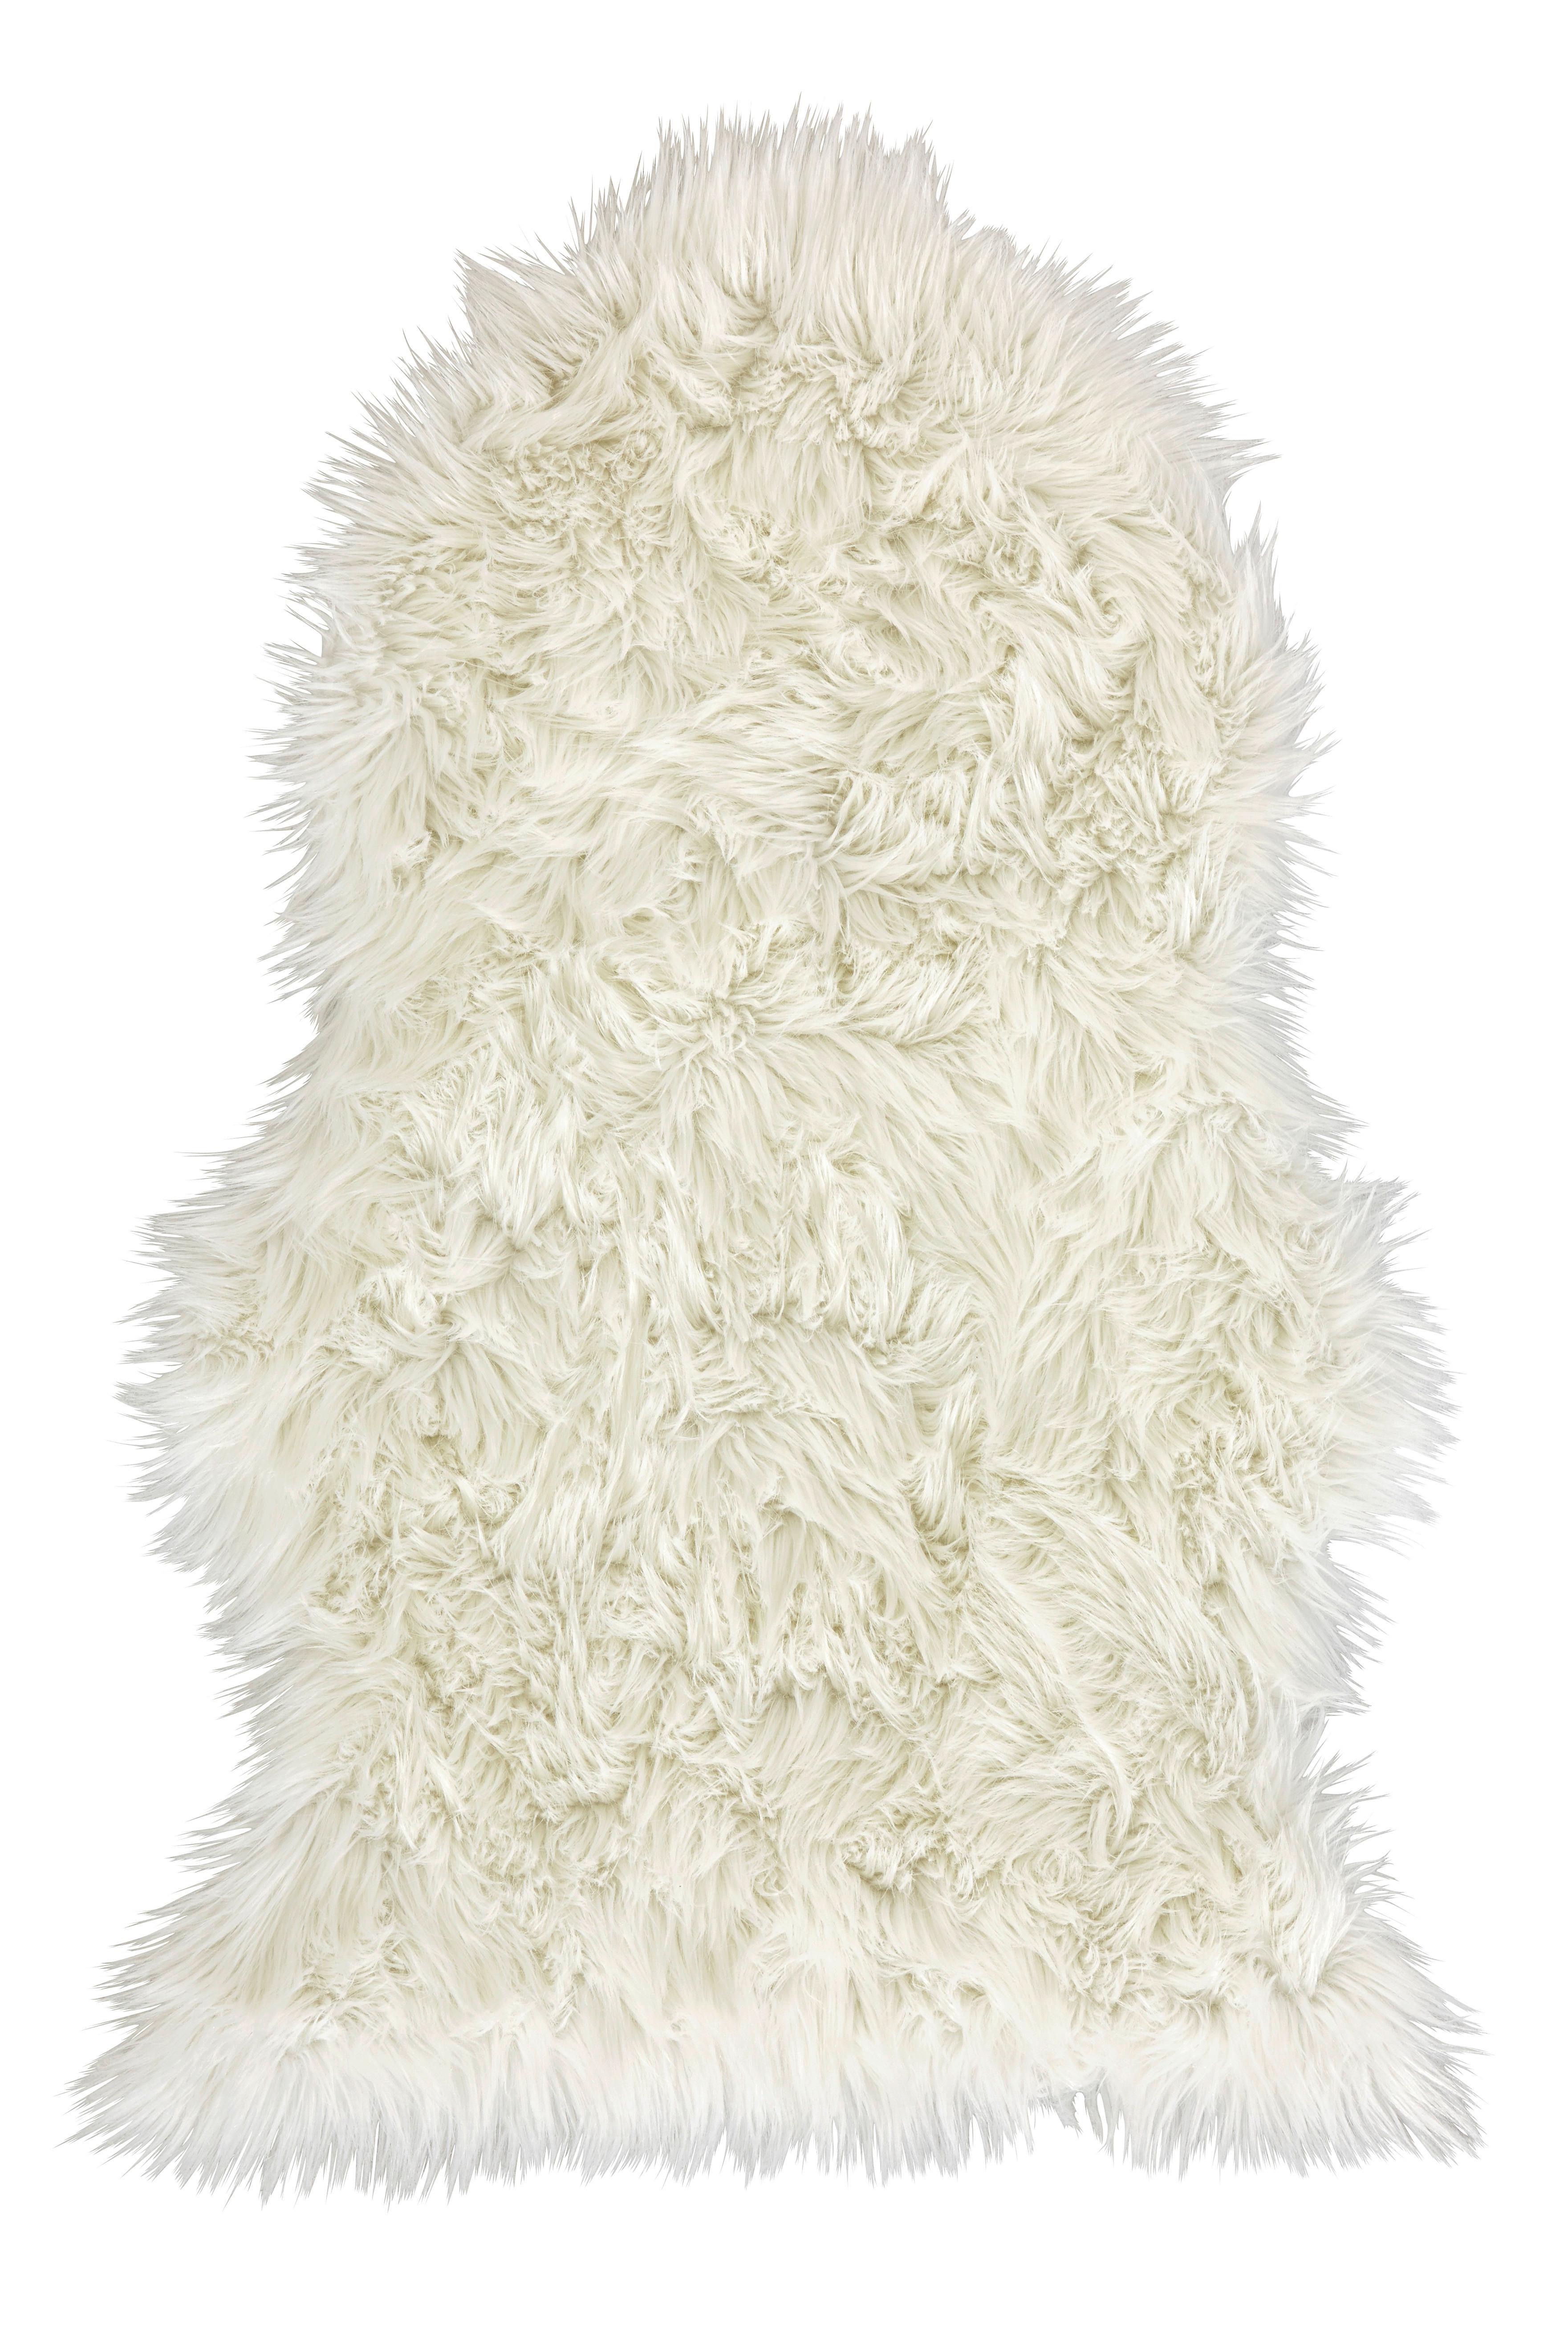 Kunstfell Alma Weiß 90x60 cm, Tierform - Weiß, ROMANTIK / LANDHAUS, Textil (90/60cm) - James Wood